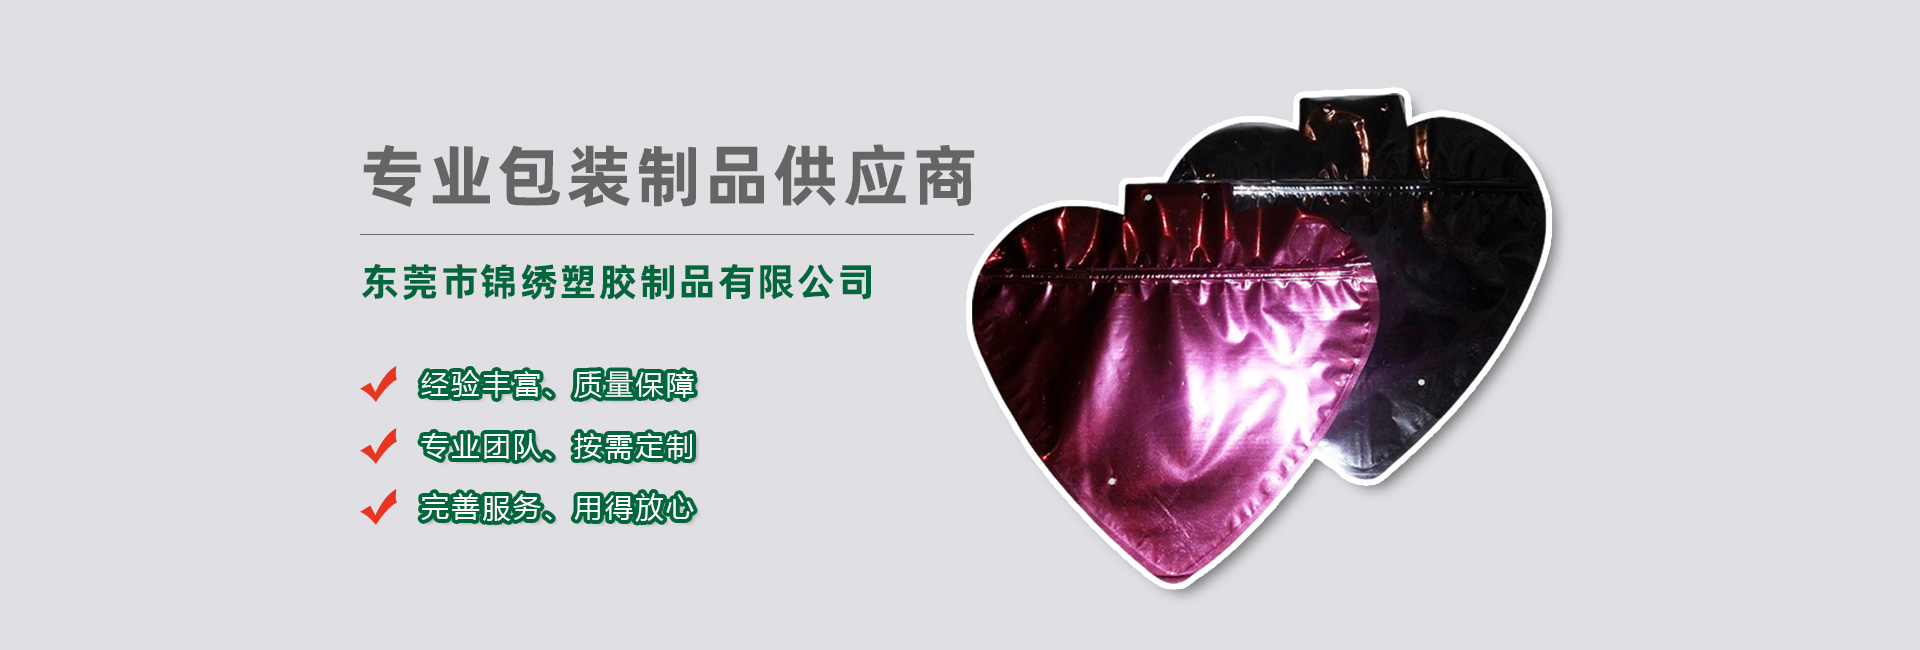 青海食品袋banner